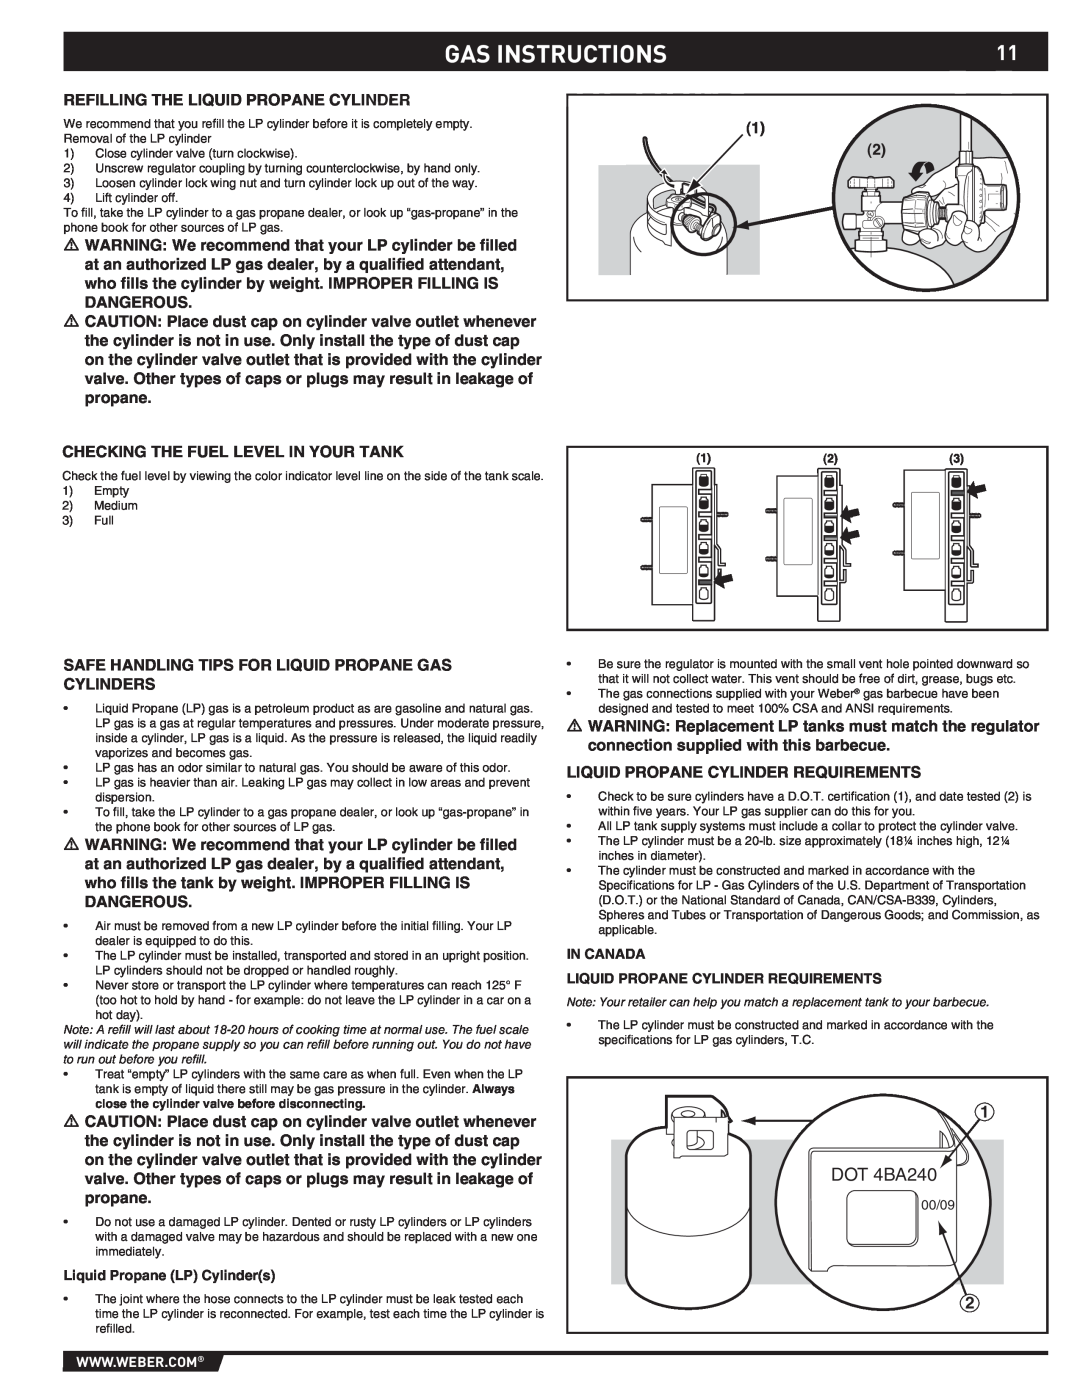 Weber S-460 Gas Instructions, DOT 4BA240, Liquid Propane LP Cylinders, In Canada Liquid Propane Cylinder Requirements 